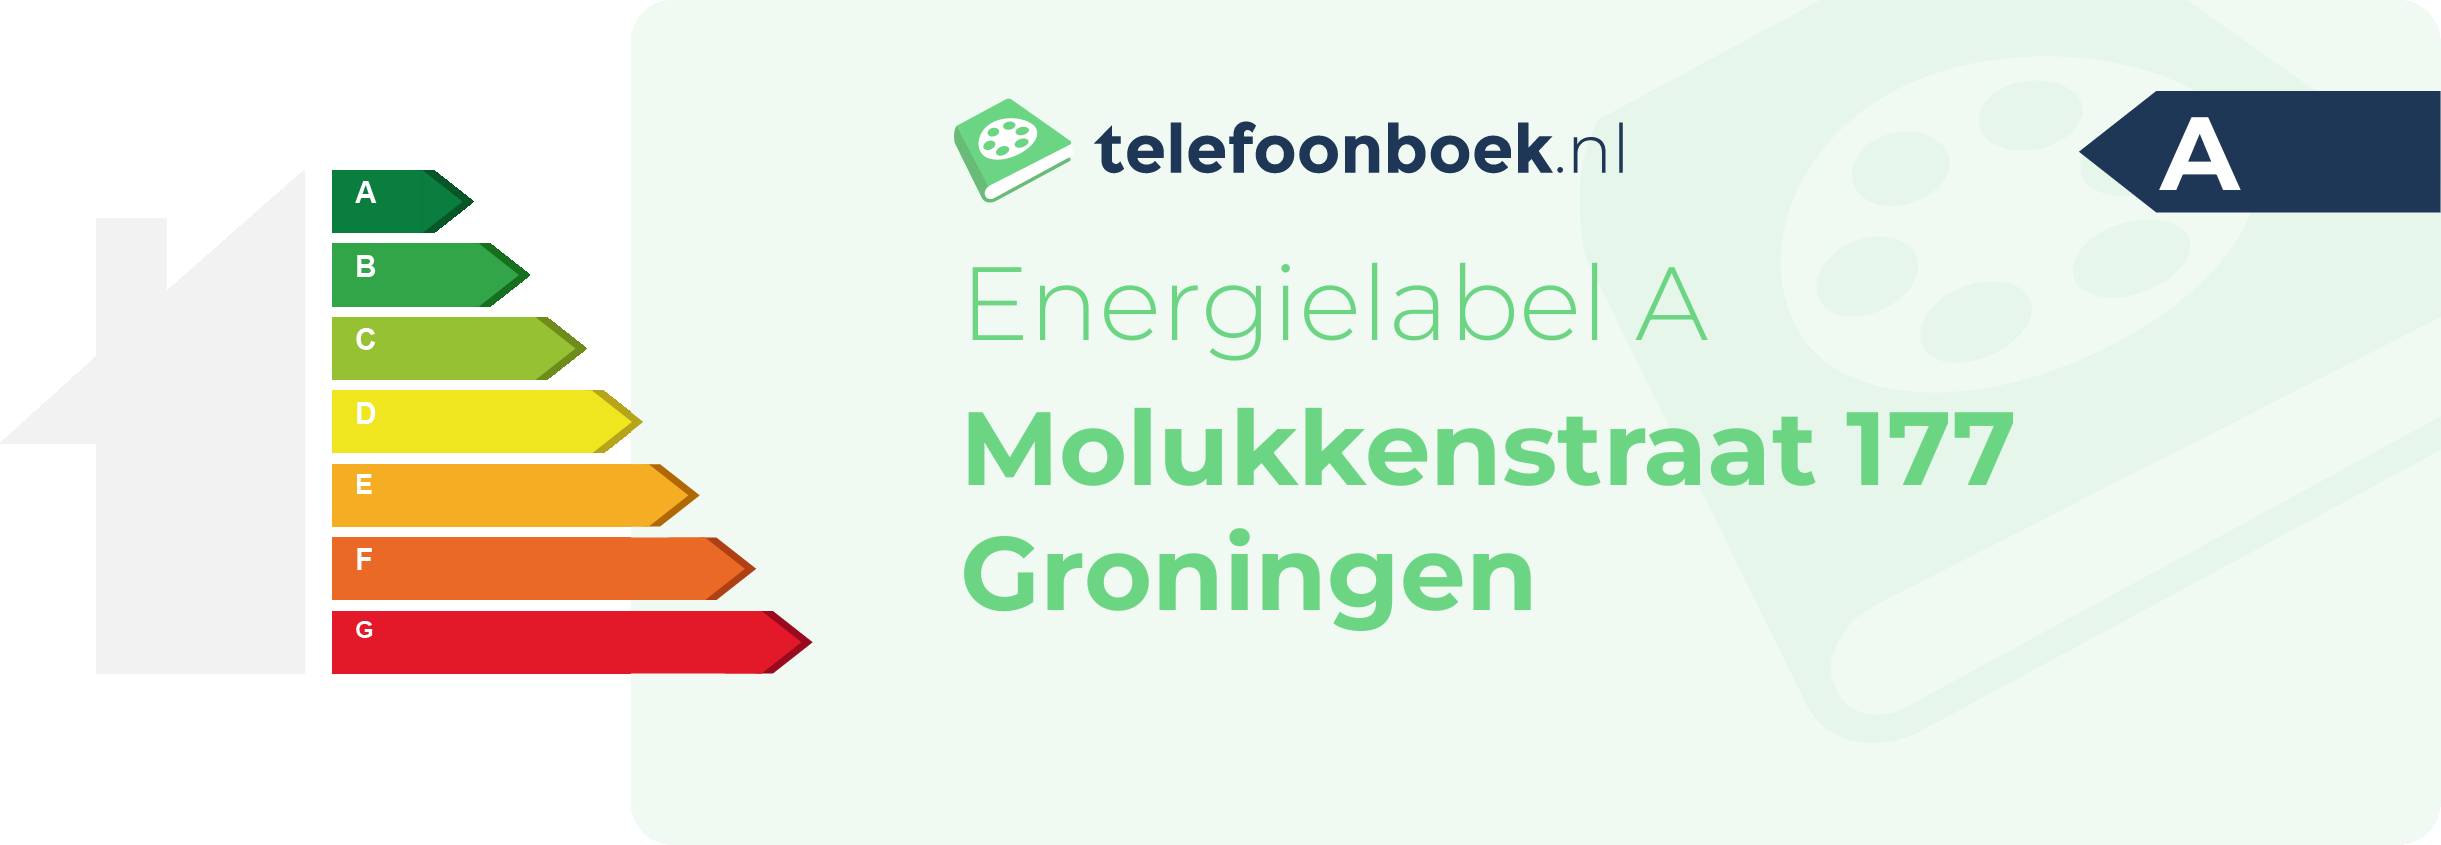 Energielabel Molukkenstraat 177 Groningen